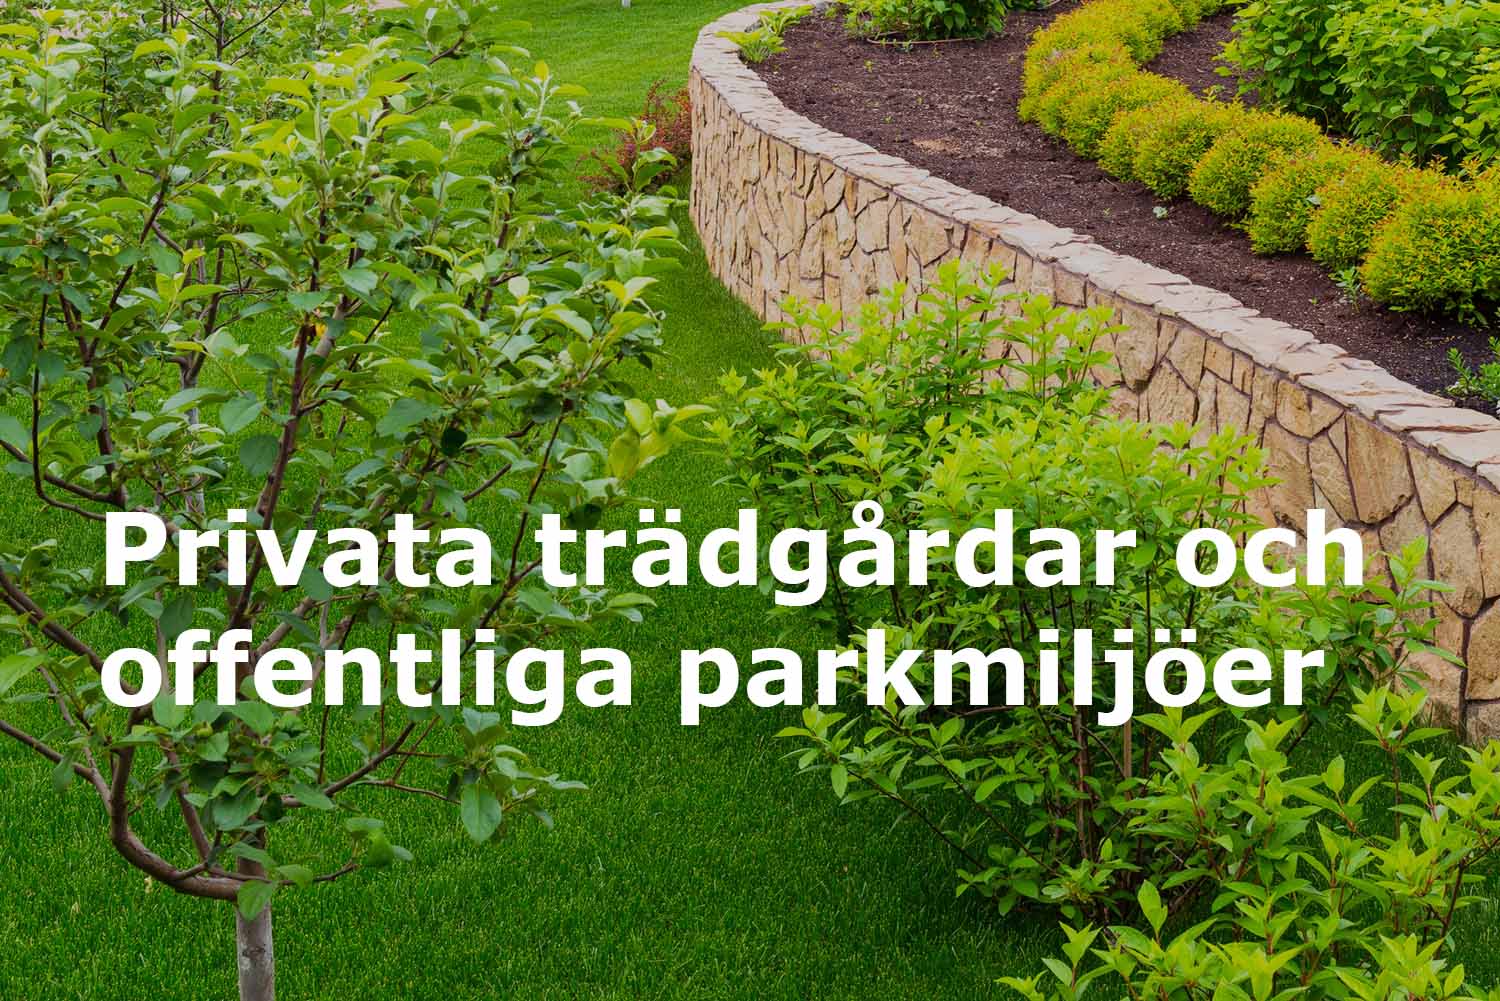 Runemyrs Alltjänst arbetar med privata trädgårdar och offentliga miljöer